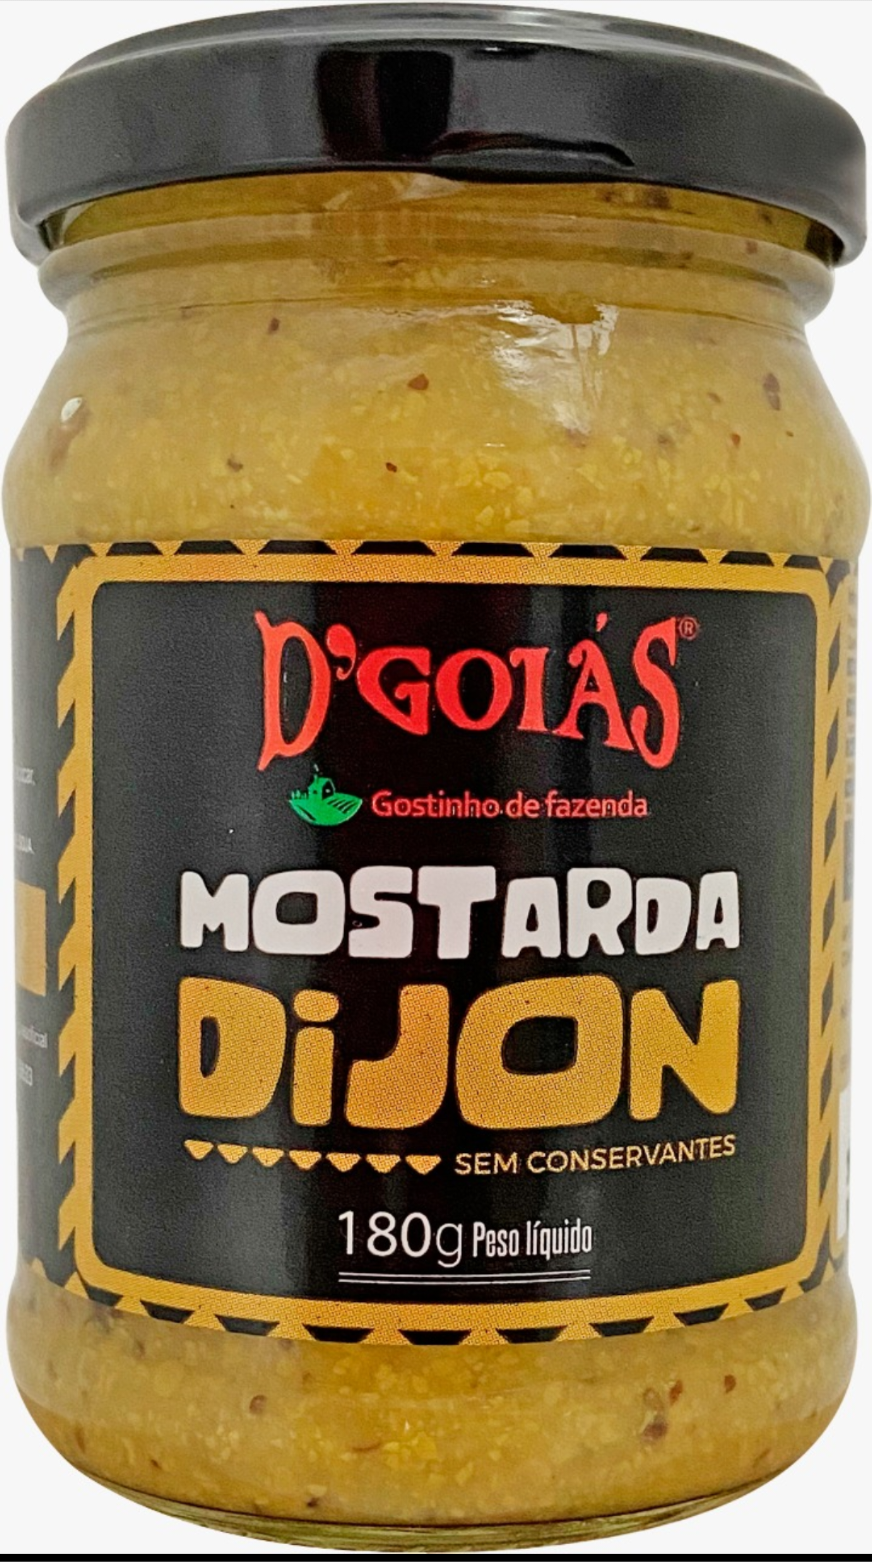 D'GOIAS - Mostarda Dijon 200G